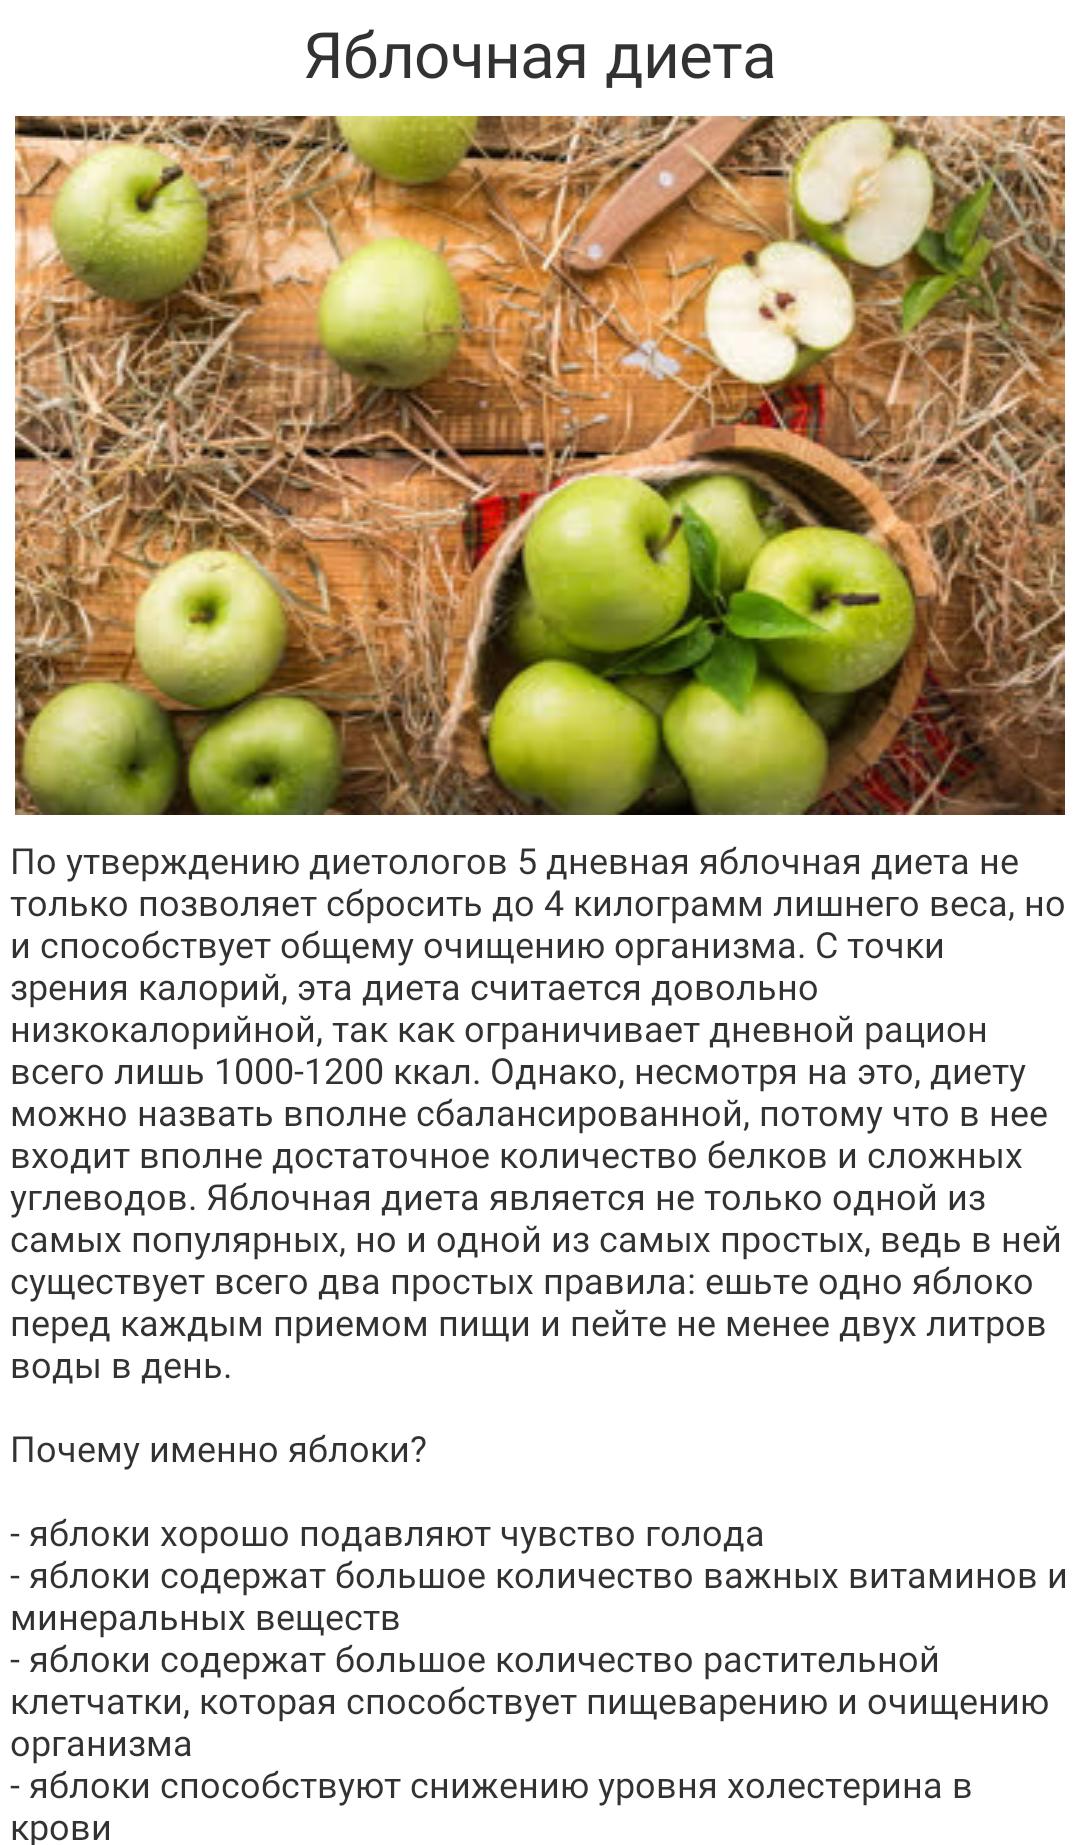 Рецепт Яблочной Диеты